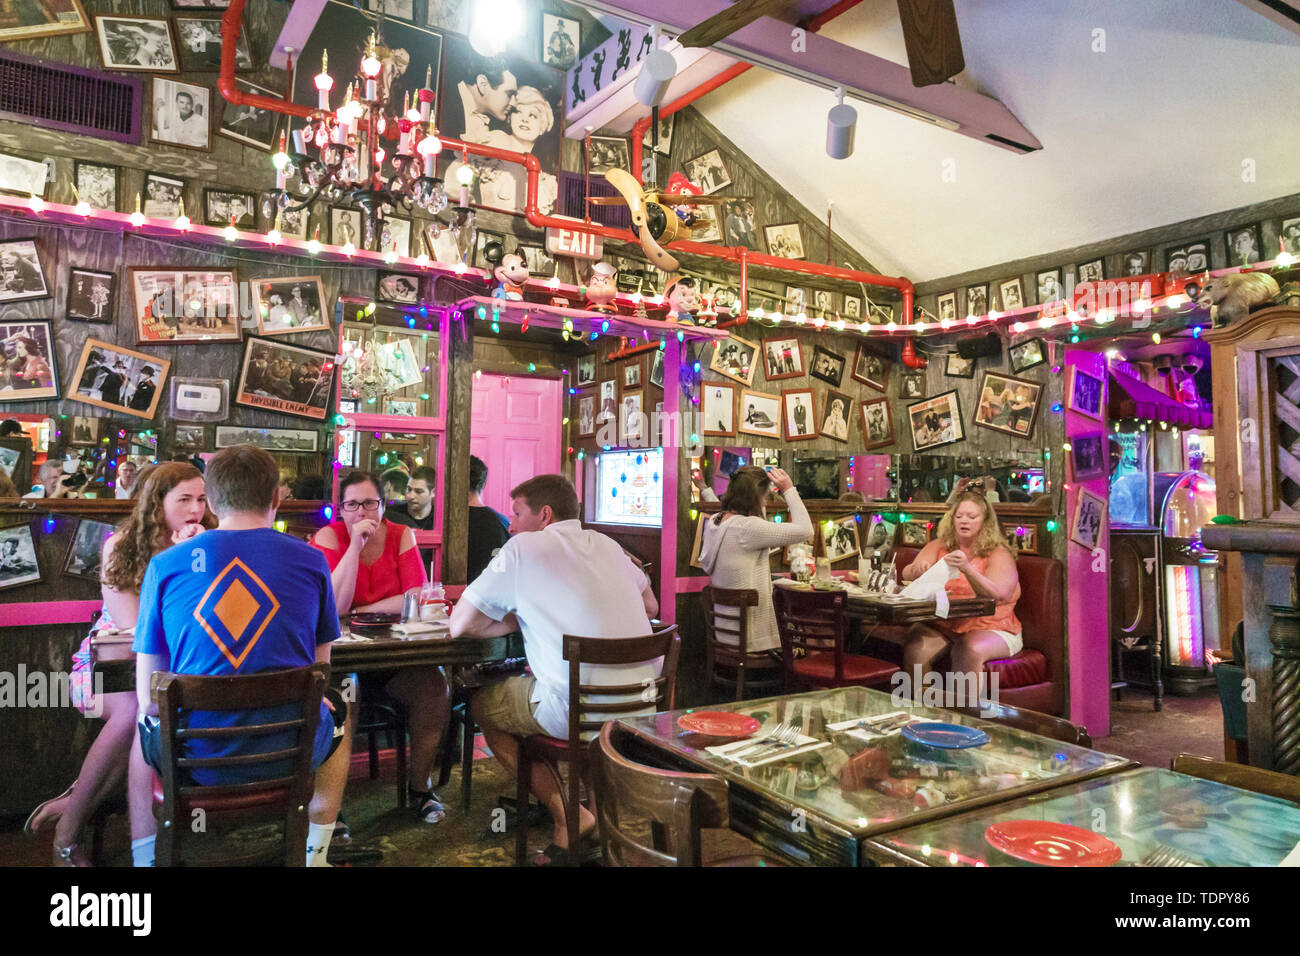 Captiva Island Florida, Bubble Room, multi-tema, ristorante ristoranti, cibo, caffè, all'interno, whimsical kitschy decor, uomo uomo maschio, wom Foto Stock